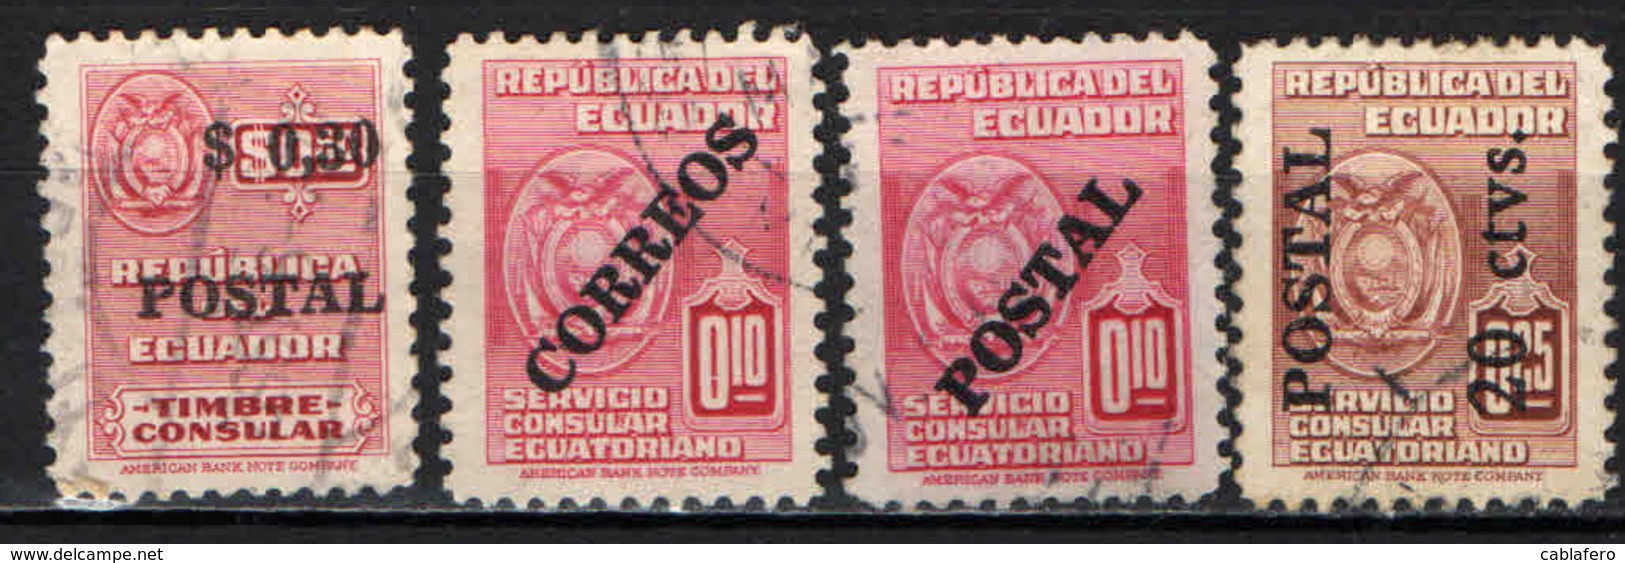 ECUADOR - 1951 - CAMPAGNA D'ALFABETIZZAZIONE - FRANCOBOLLI DI SERVIZIO CONSOLARE CON SOVRASTAMPA - OVERPRINTED - USATO - Ecuador